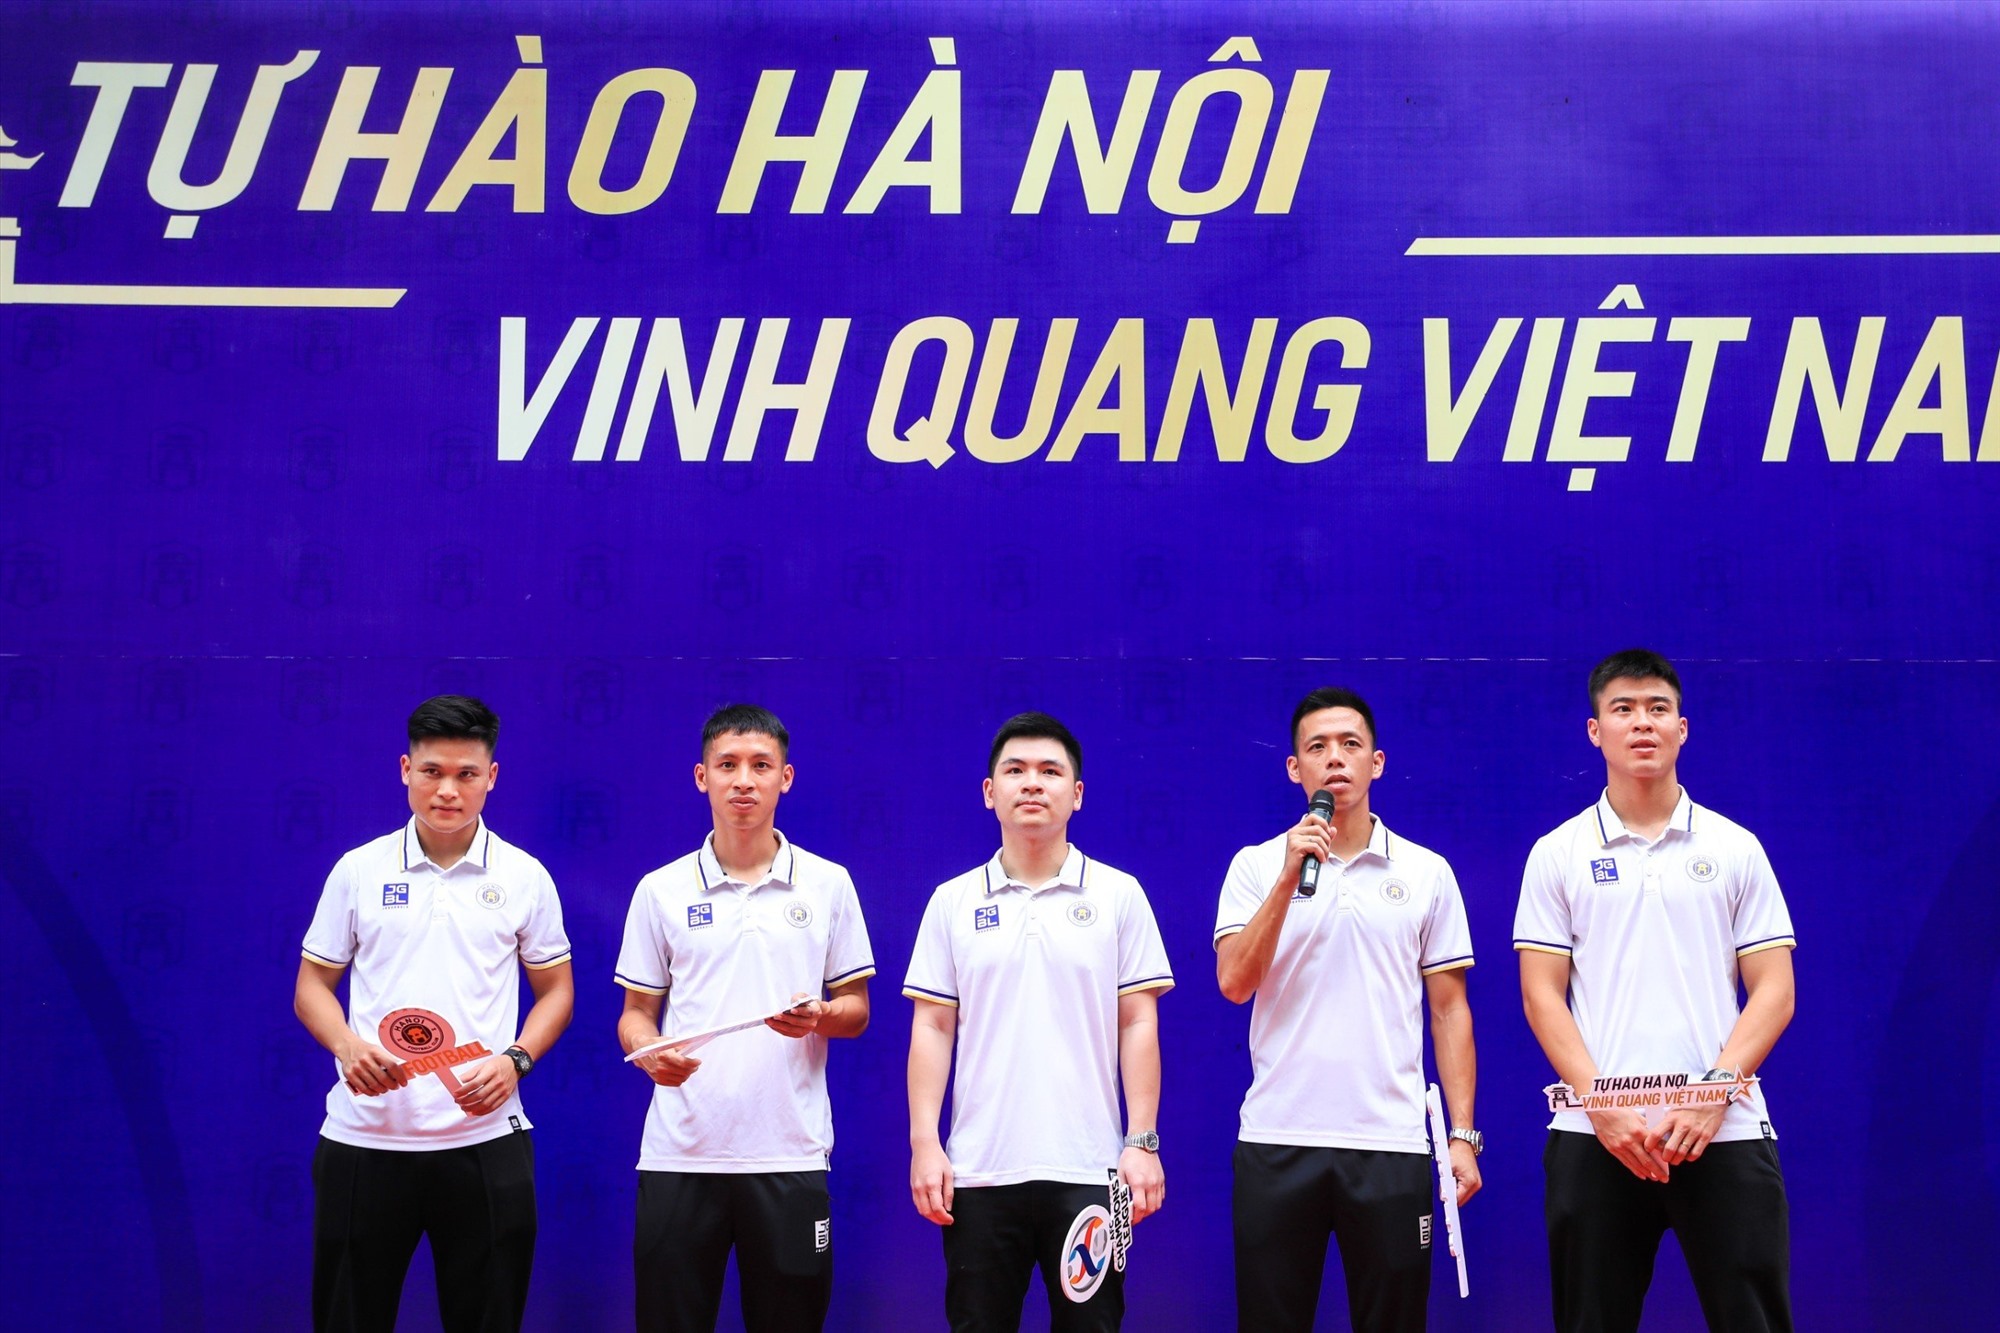 Chủ tịch Hà Nội FC Đỗ Vinh Quang, các cầu thủ Nguyễn Văn Quyết, Đỗ Hùng Dũng, Đỗ Duy Mạnh và Phạm Tuấn Hải tại buổi giao lưu ngày 9.9. Ảnh: Minh Dân